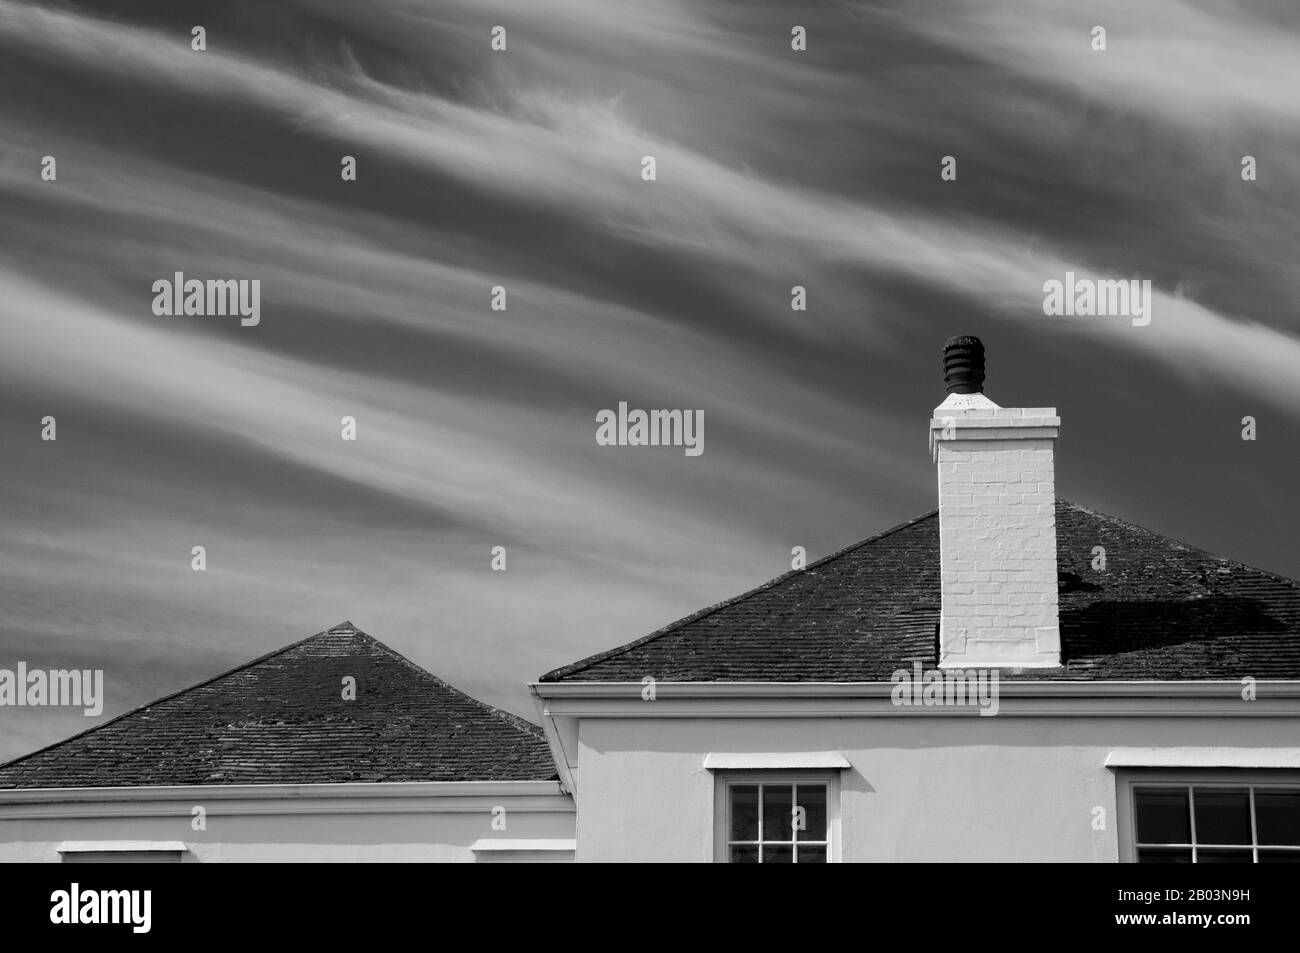 Photo en noir et blanc des toits carrelés, cheminée et ciel estival avec nuages de plumes à St ives, Cornwall, Angleterre. Banque D'Images